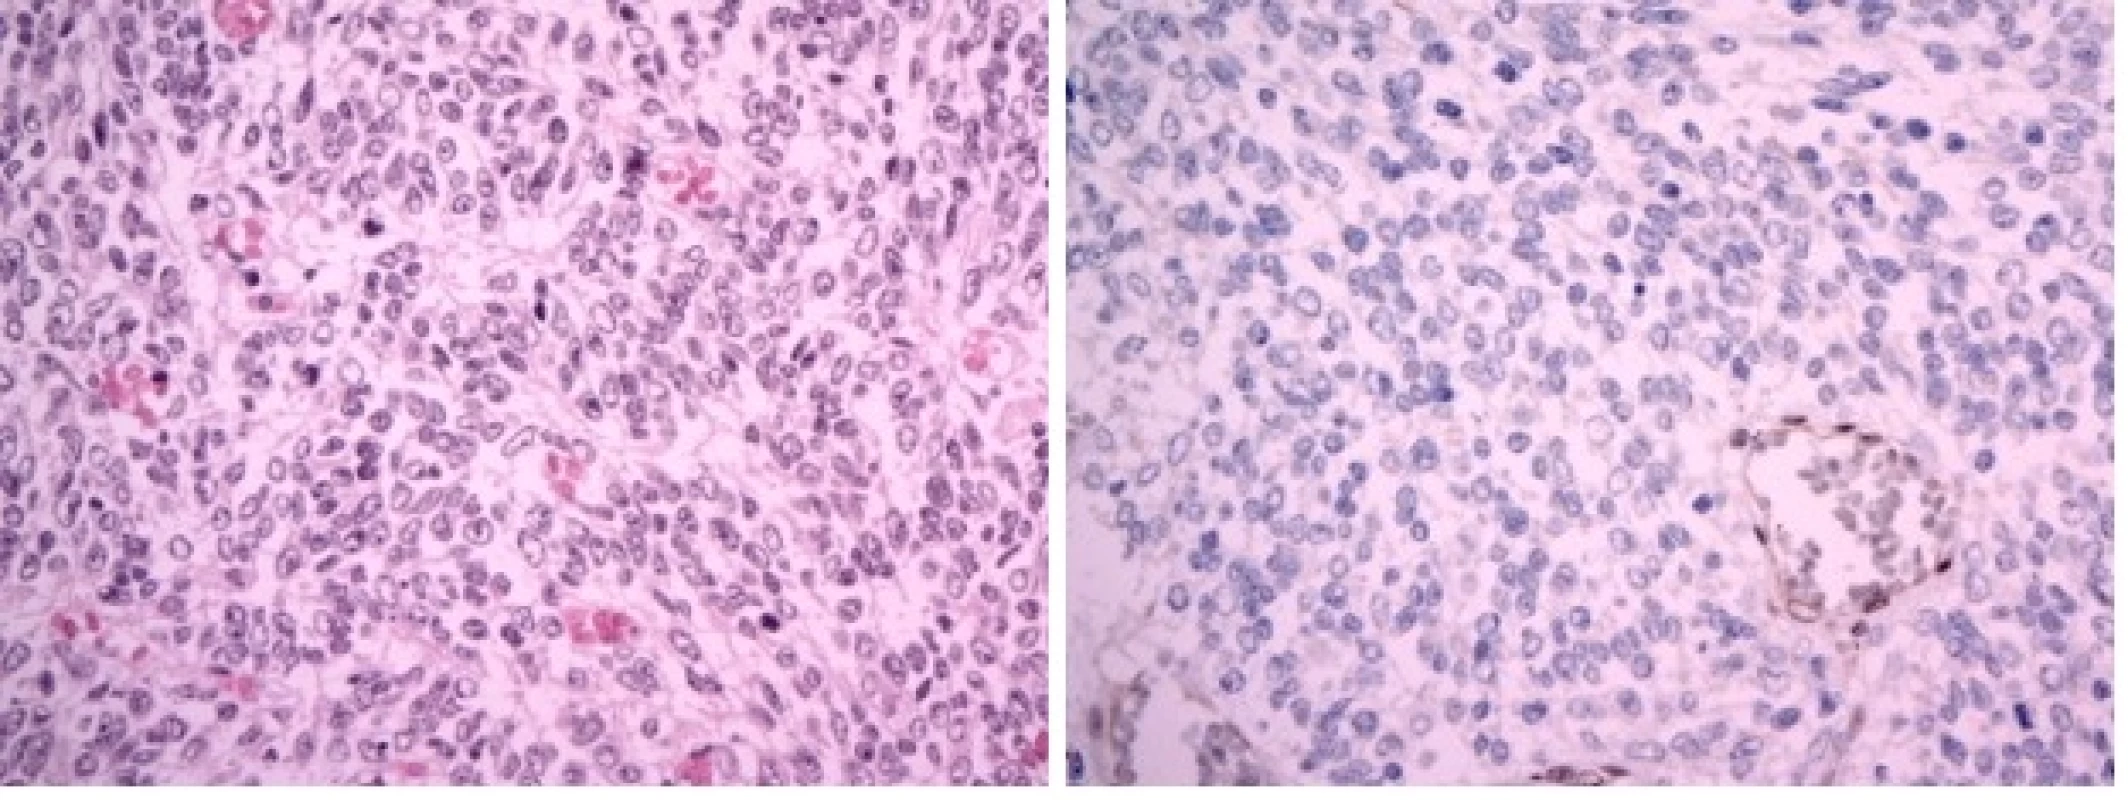 A Atypický teratoidní/rhabdoidní tumor (AT/RT), WHO grade IV. Hypercelulární nádor sestává ze solidně uspořádaných drobných protáhlých buněk s bledou cytoplazmou, které místy svou morfologií a rytmickým uspořádáním připomínaly meduloblastom. V nádoru byly početné mitózy. (hematoxylin-eozin, originální zvětšení x400).
B Imunohistochemický průkaz proteinu INI1 je v nádorových buňkách negativní (při pozitivní vnitřní kontrole v endoteliích, originální zvětšení x400).
Image 2 A Atypical teratoid-rhabdoid tumor (AT/RT), WHO grade IV. Hypercellular tumor containing oval cells with pale cytoplasm arranged in a solid pattern. Their morphology and arrangement resemble cells of medulloblastoma. Numerous mitosis were seen. (H&amp;E x400)
Image 2 B: Imunohistochemical negativity of INI1 protein in tumour cells (retained positivity in endothelial cells, x400)